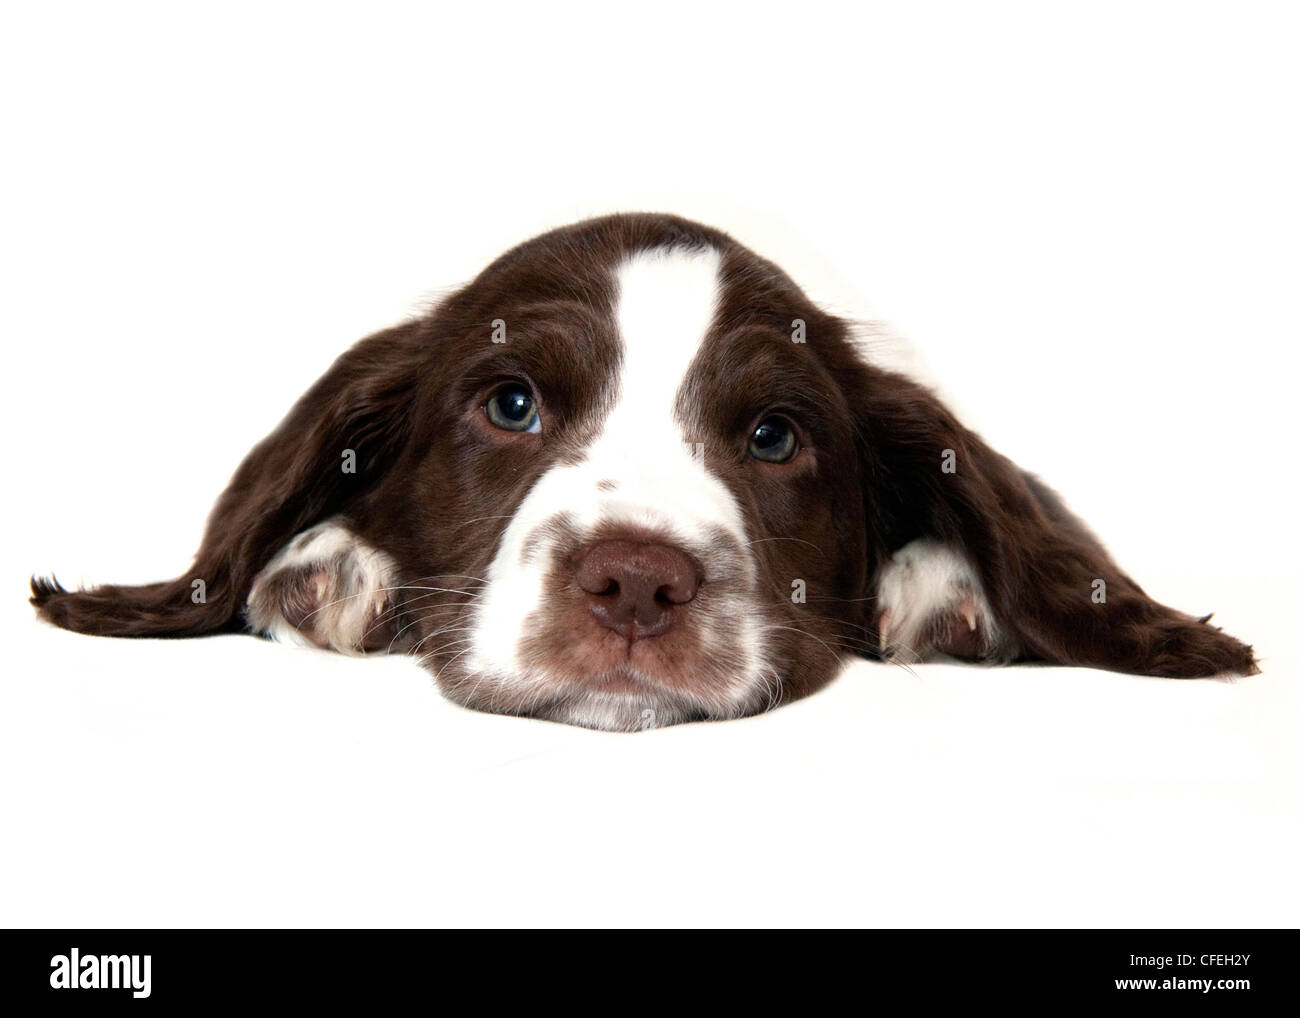 Springer spaniel cucciolo di guardare avanti con occhi verdi contro uno sfondo bianco Foto Stock